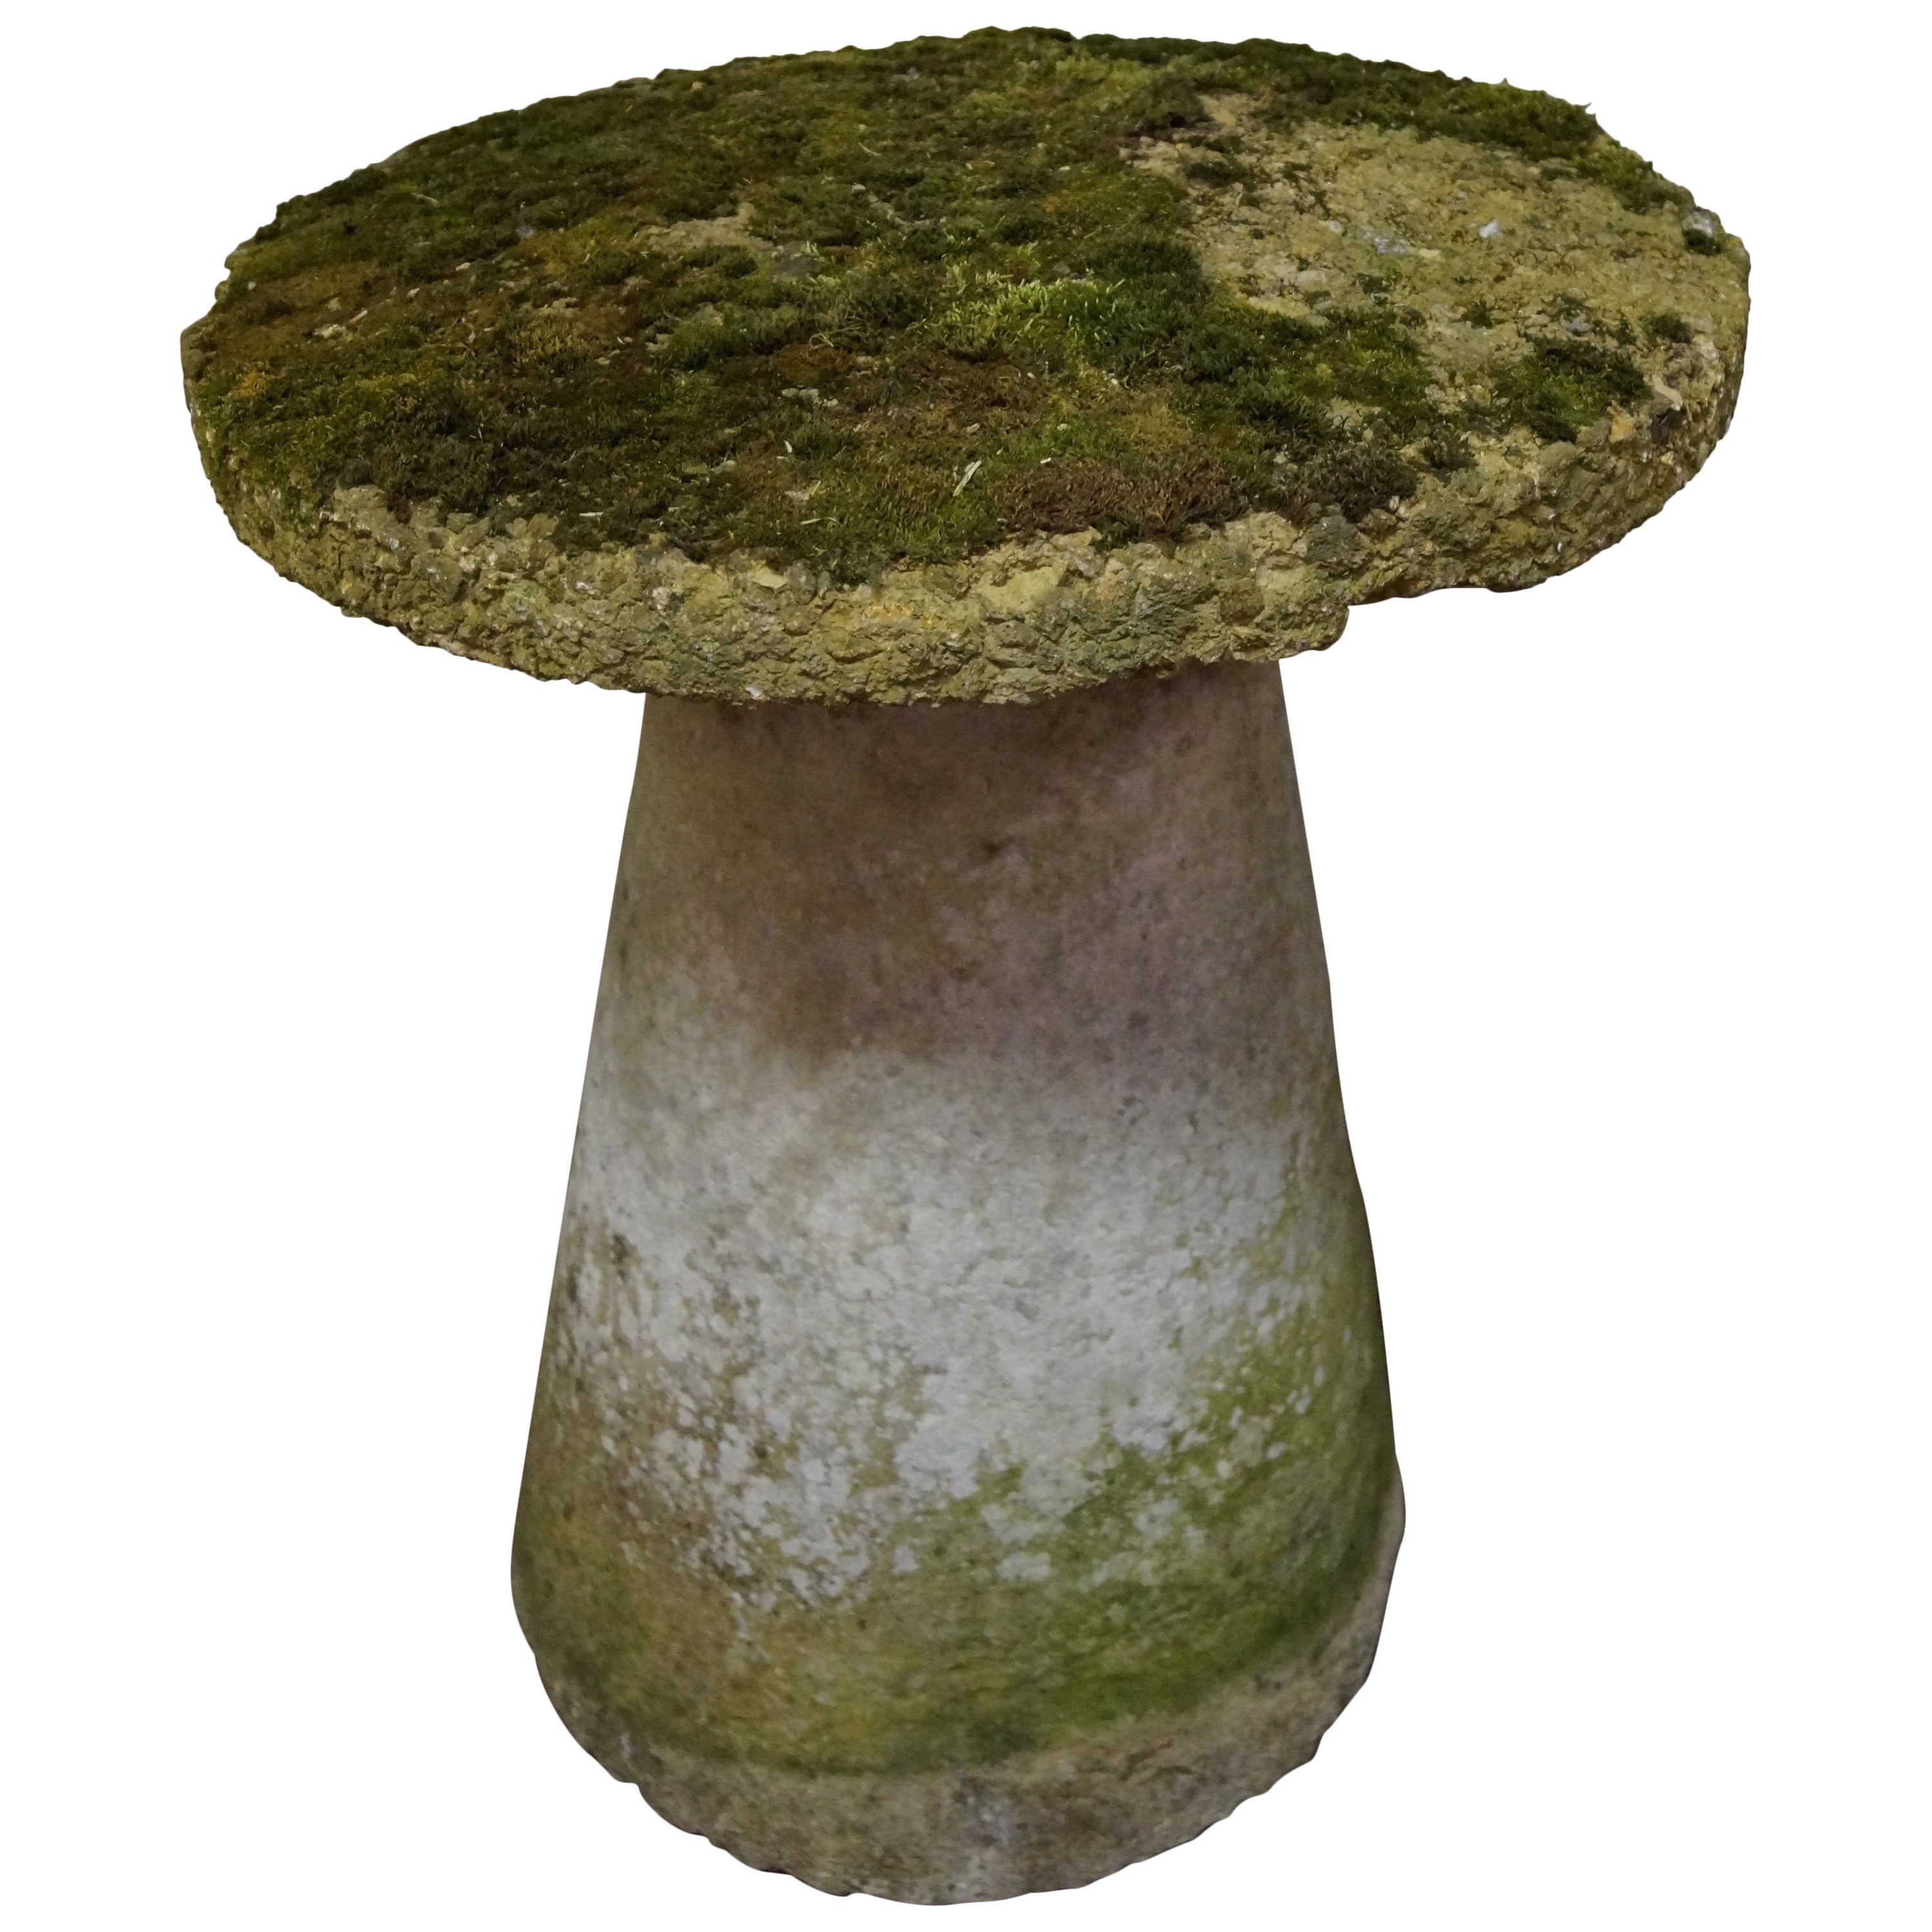 Vintage Staddle Stone or Mushroom Stone